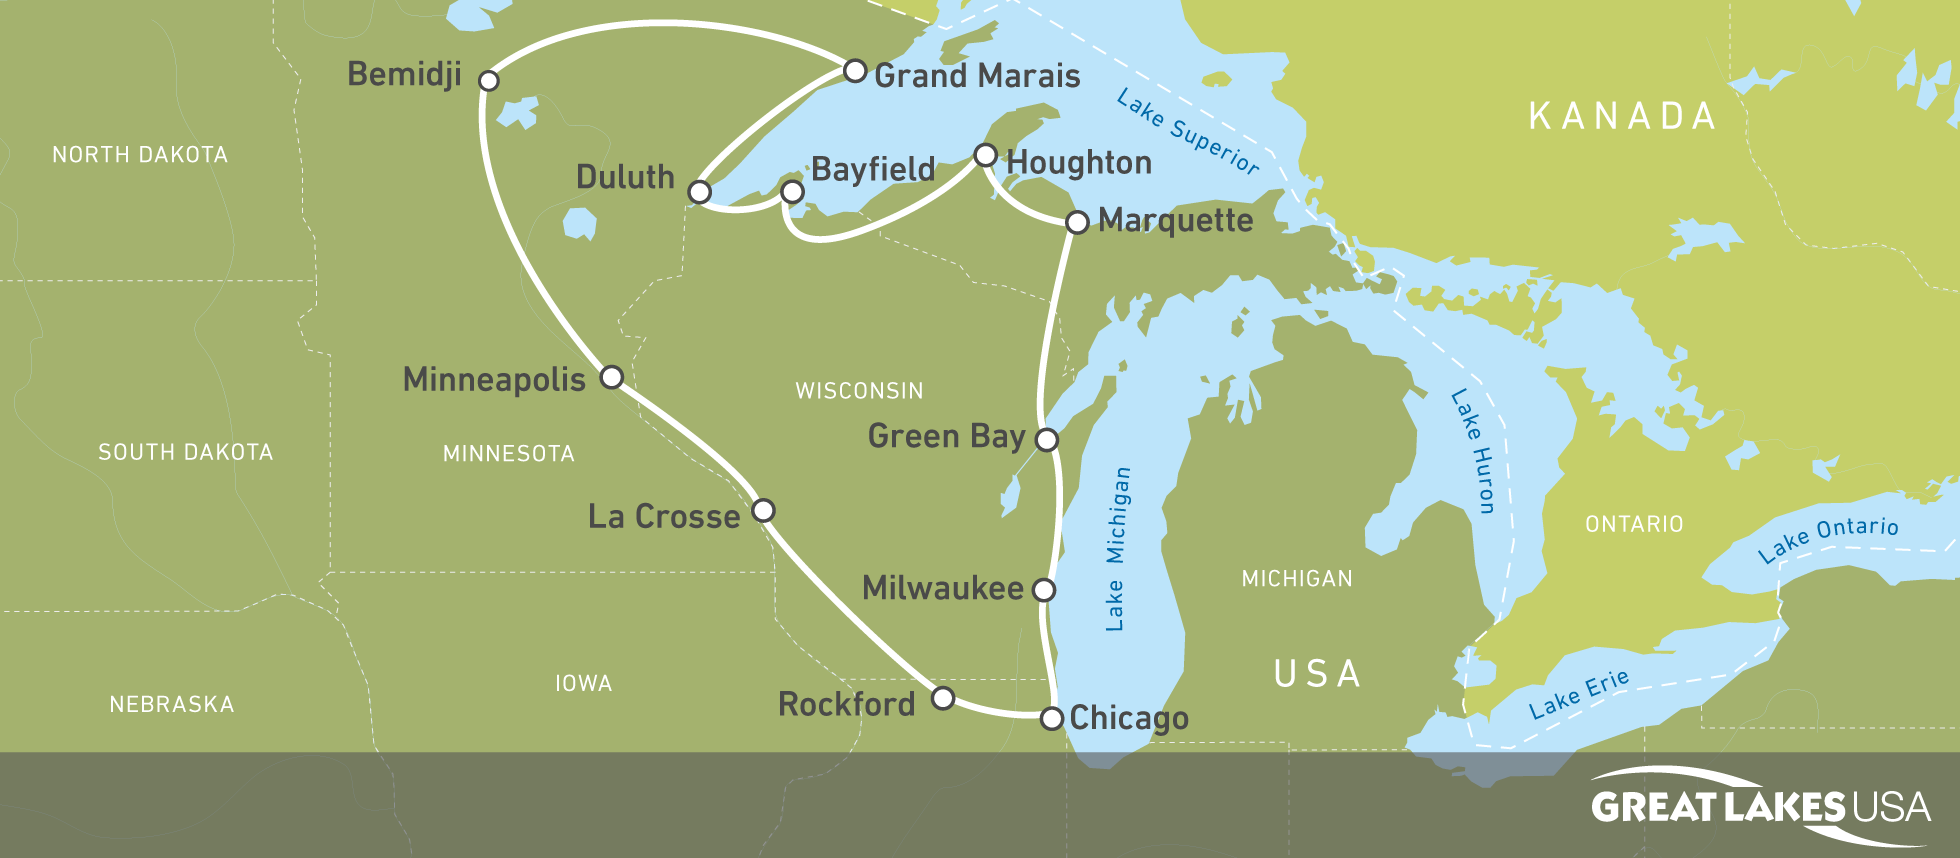 18-tägige Route durch die Great-Lakes-Staaten buchen